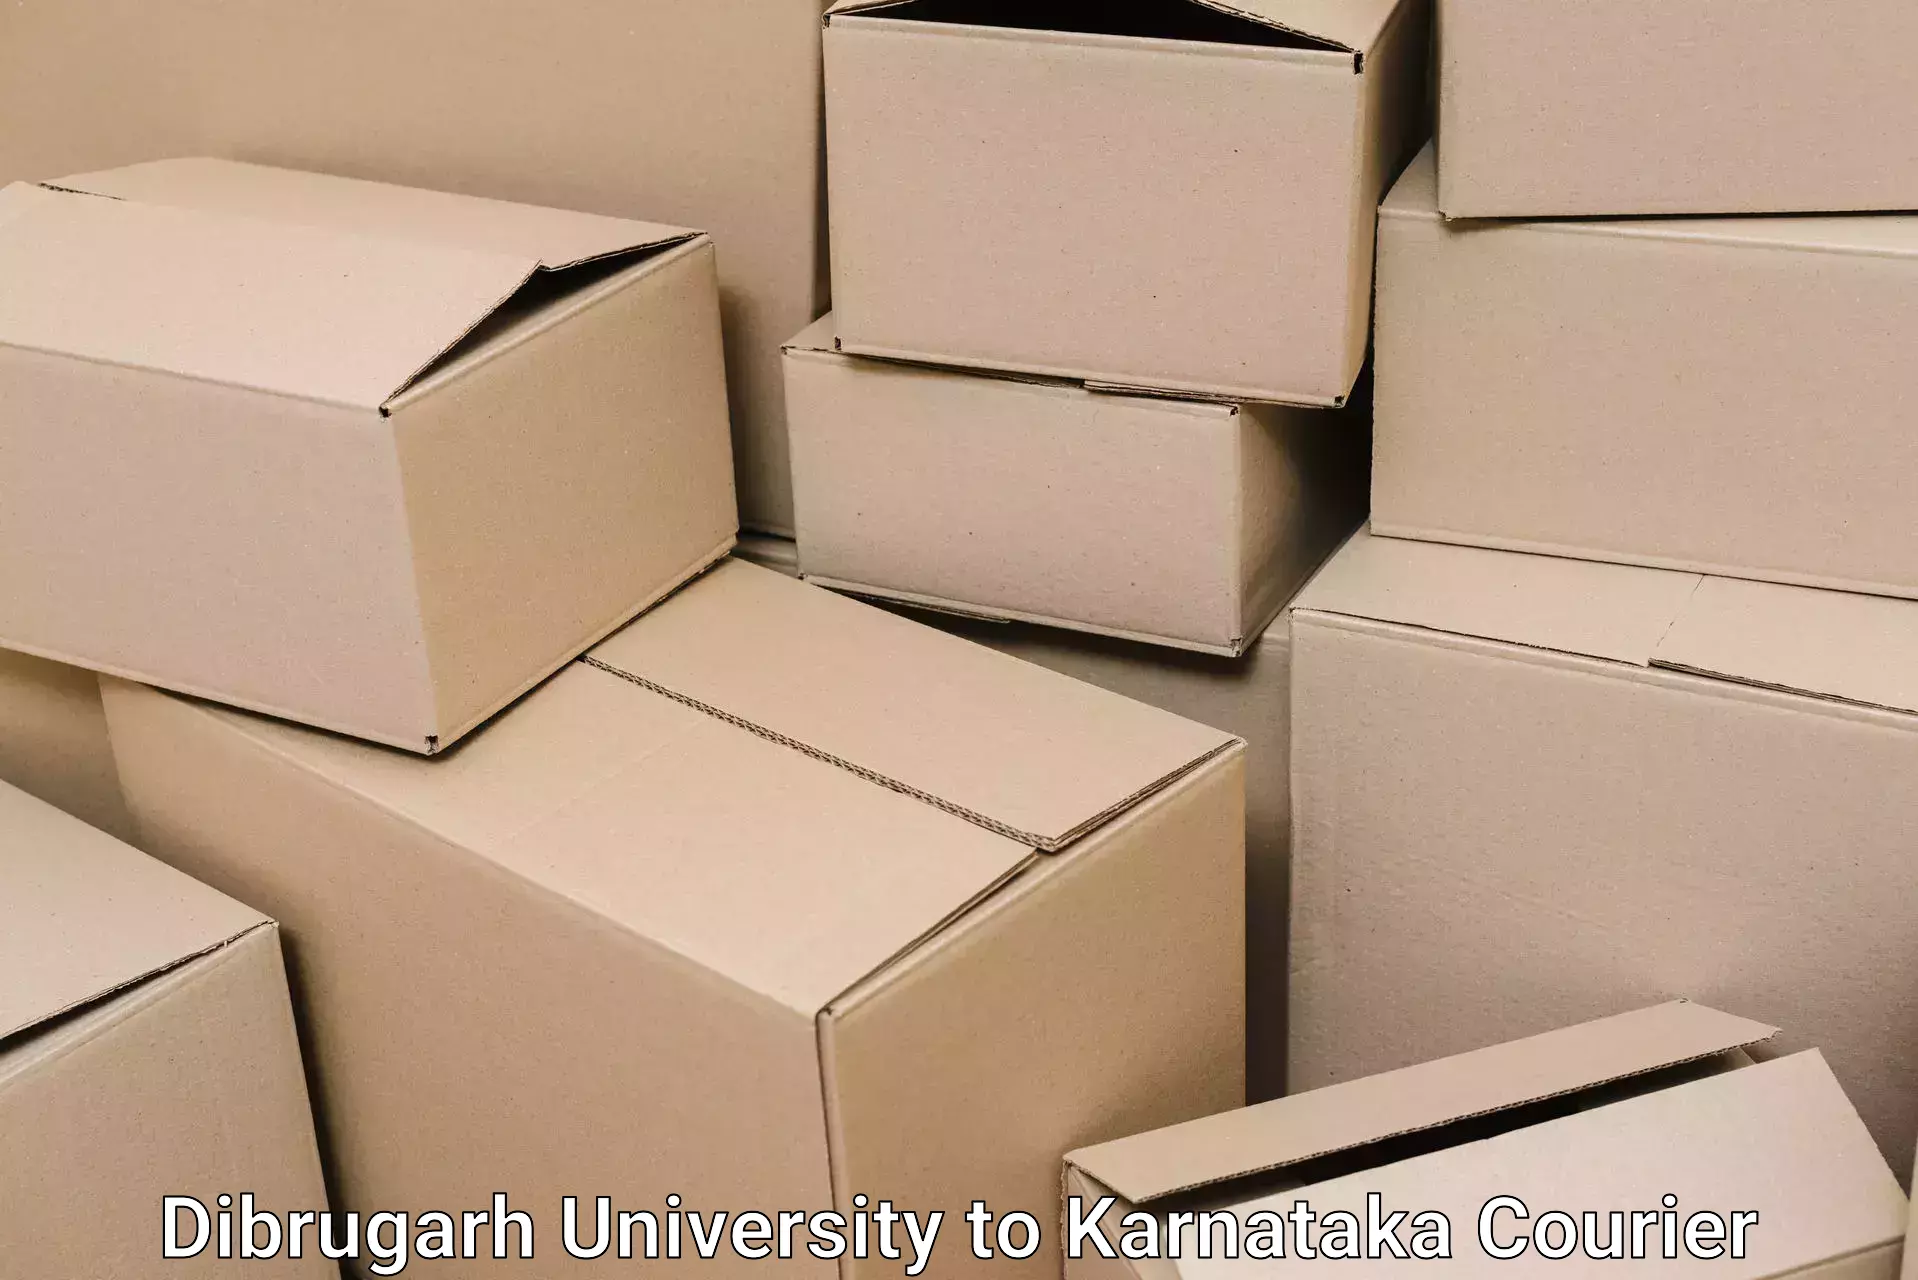 Furniture moving plans Dibrugarh University to Kurugodu